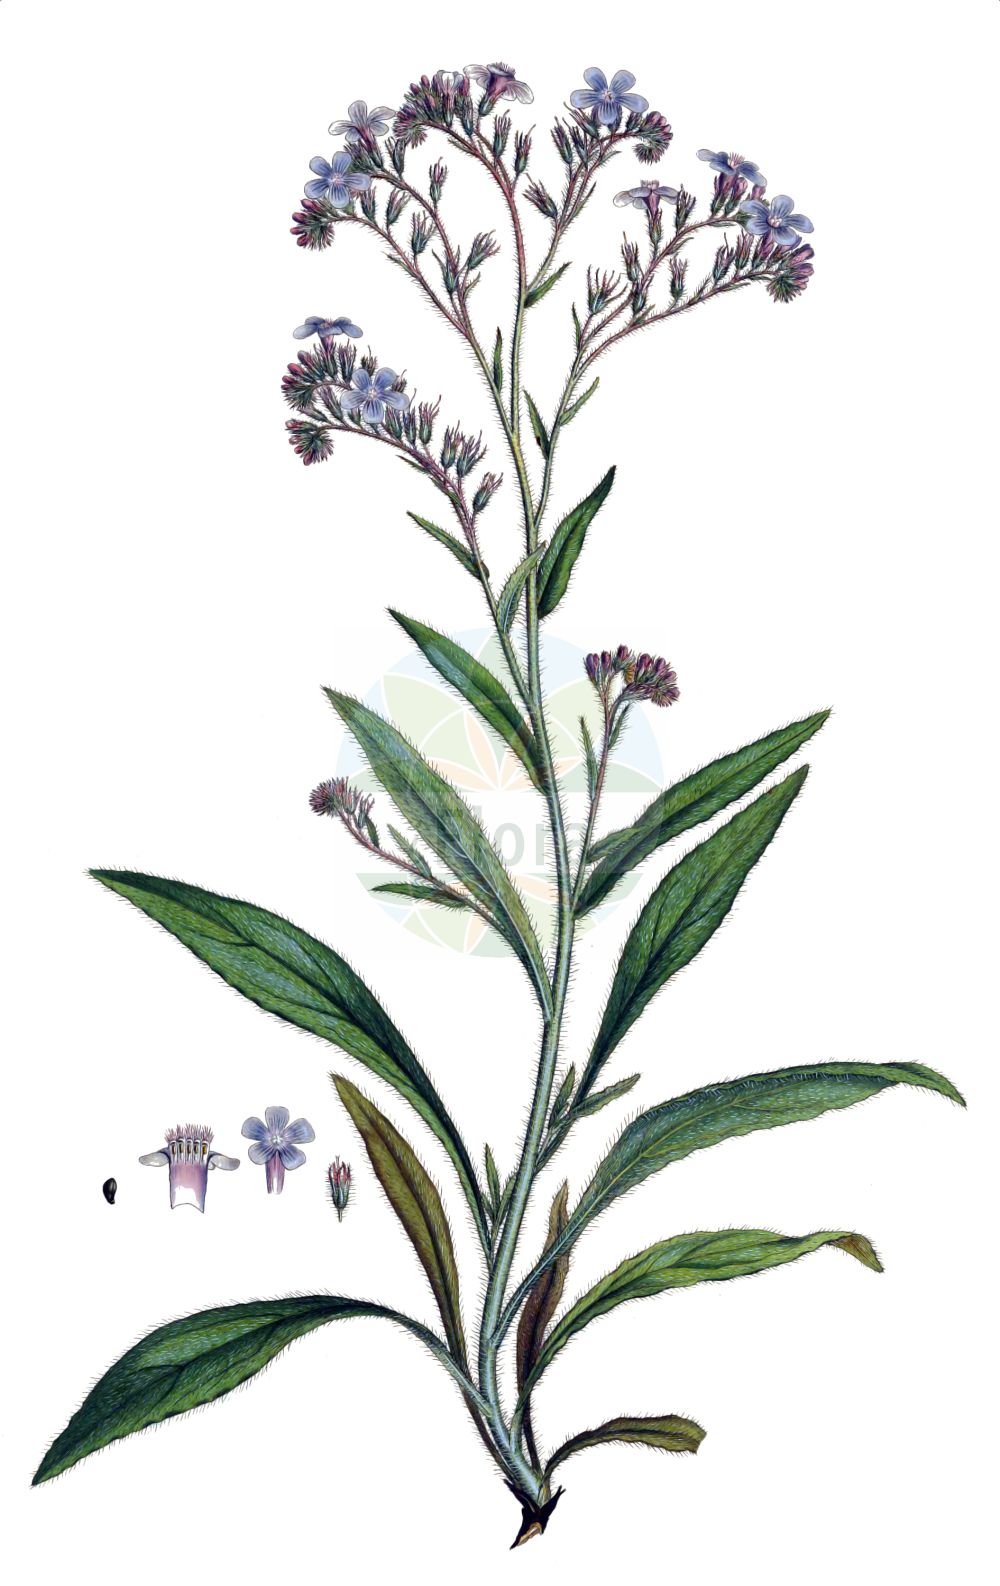 Historische Abbildung von Anchusa azurea (Italienische Ochsenzunge - Garden Anchusa). Das Bild zeigt Blatt, Bluete, Frucht und Same. ---- Historical Drawing of Anchusa azurea (Italienische Ochsenzunge - Garden Anchusa). The image is showing leaf, flower, fruit and seed.(Anchusa azurea,Italienische Ochsenzunge,Garden Anchusa,Anchusa azurea,Anchusa biceps,Anchusa italica,Anchusa macrocarpa,Anchusa macrophylla,Anchusa paniculata,Buglossum italicum,Buglossum vulgare,Italienische Ochsenzunge,Garden Anchusa,Italian Alkanet,Italian Bugloss,Large Blue Alkanet,Anchusa,Ochsenzunge,Bugloss,Boraginaceae,Raublattgewächse,Forget-me-Not family,Blatt,Bluete,Frucht,Same,leaf,flower,fruit,seed,Sibthorp & Smith (1806-1840))